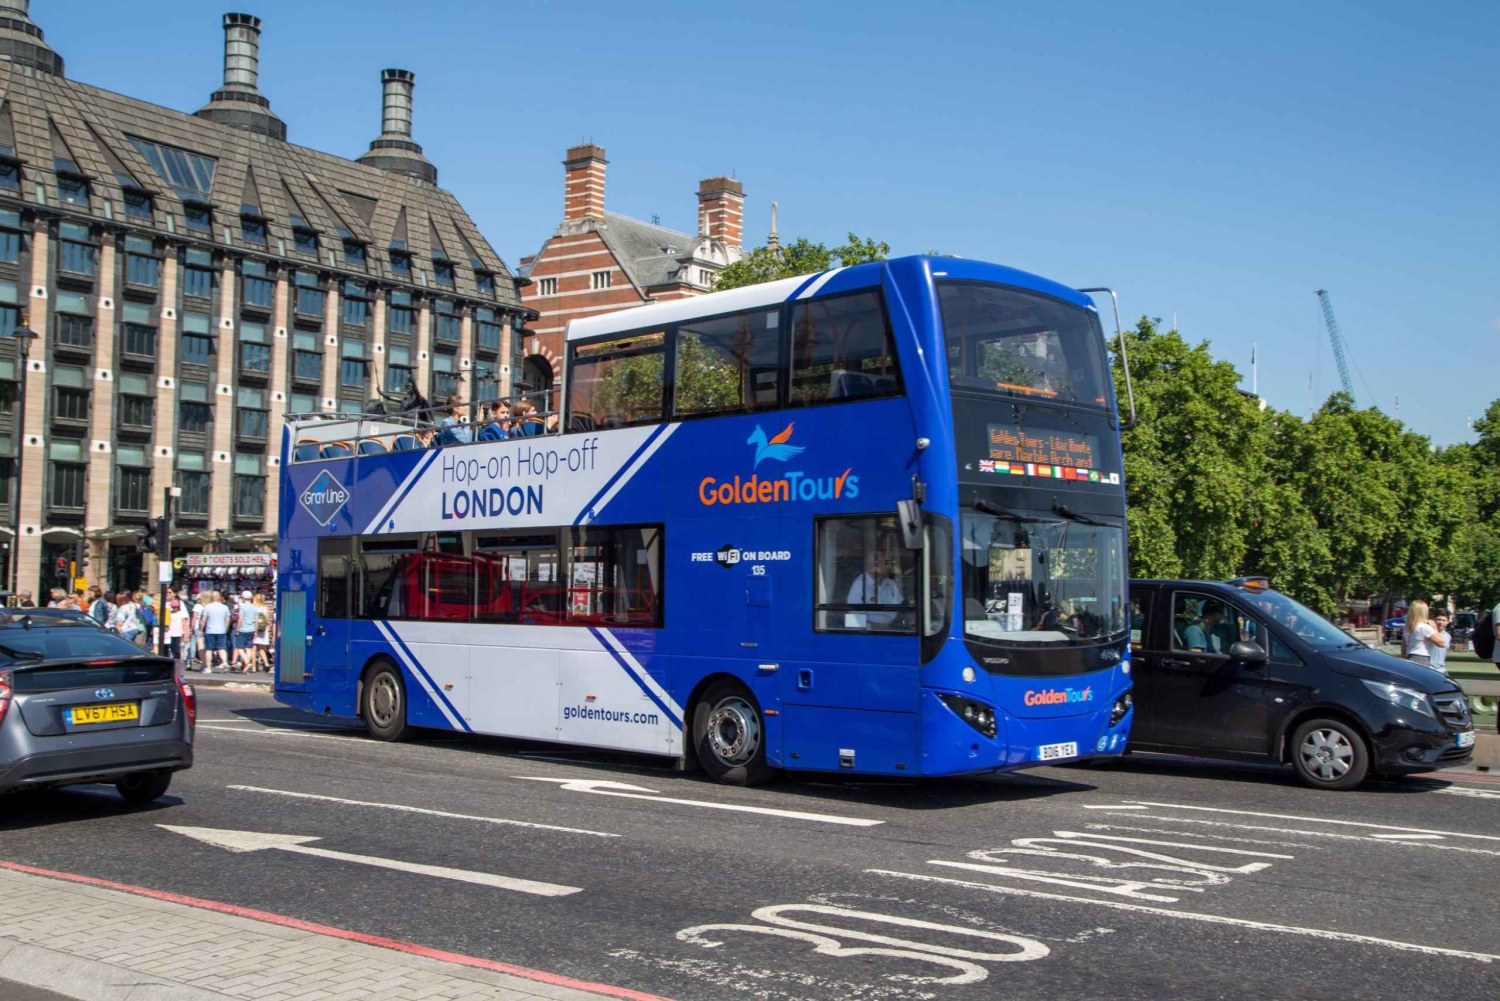 Londres : Golden Tours bus en arrêts bus à arrêts multiples